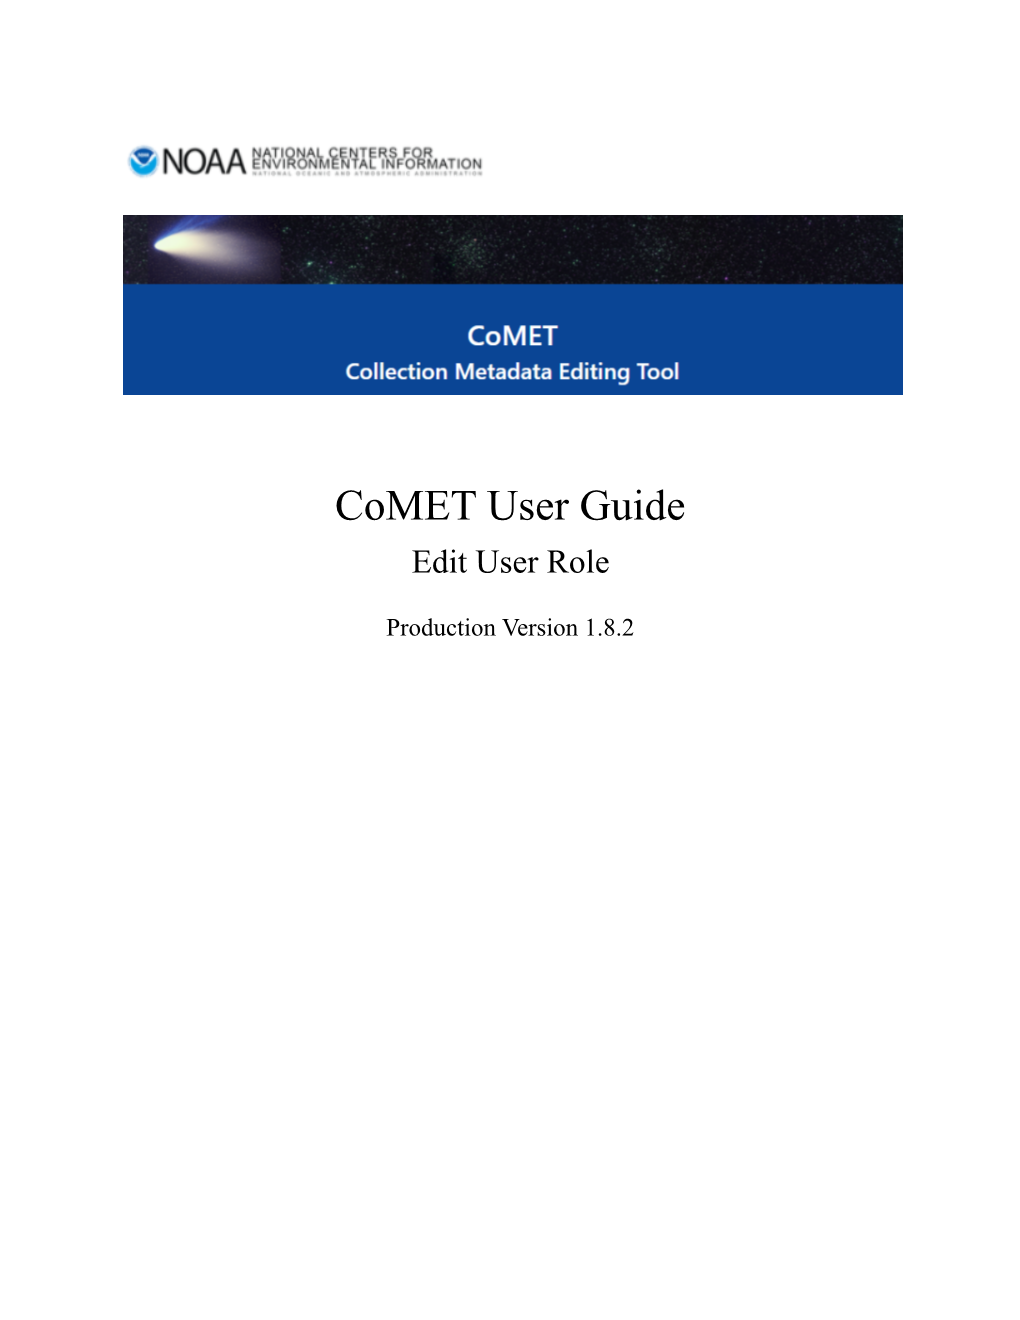 Comet User Guide, V 1.8.2